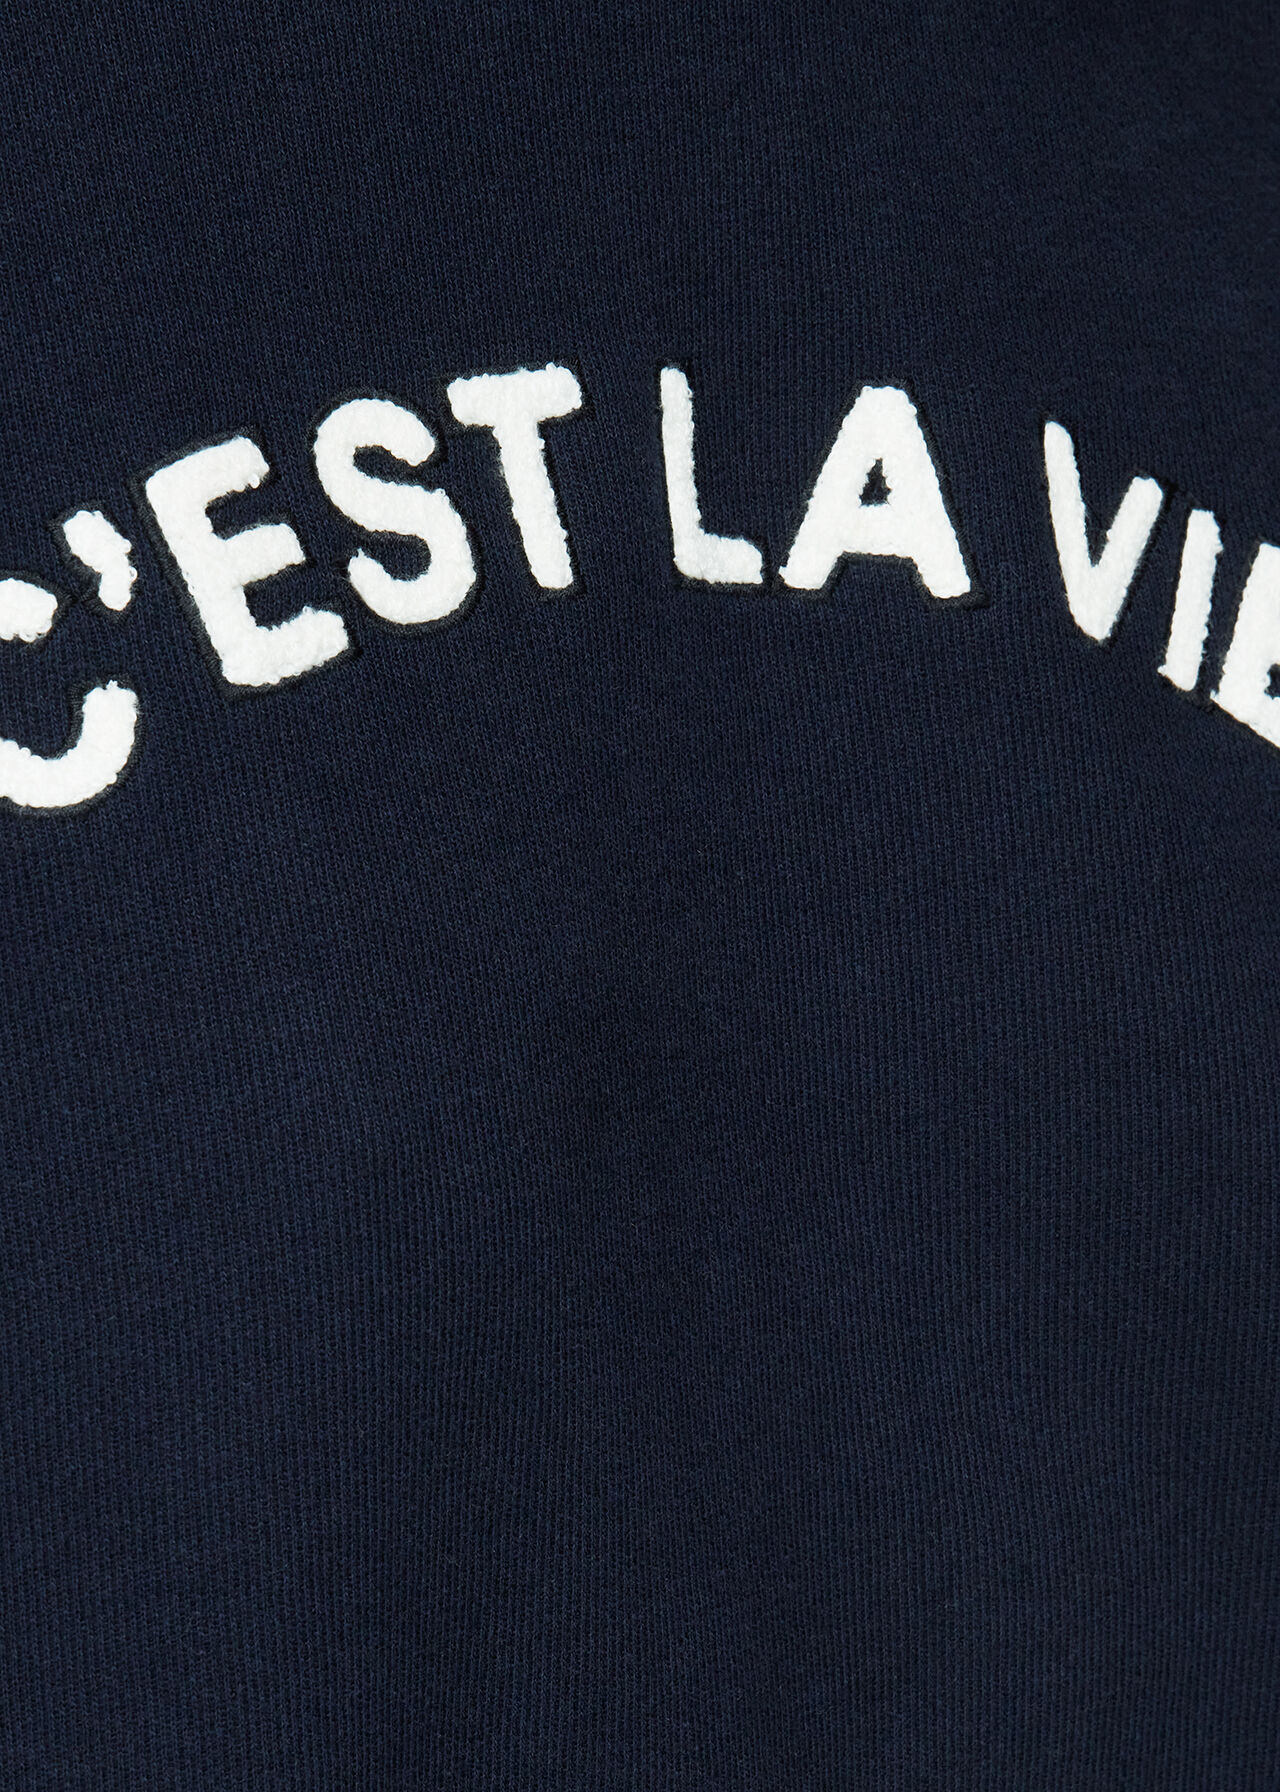 C est La Vie Logo Sweatshirt